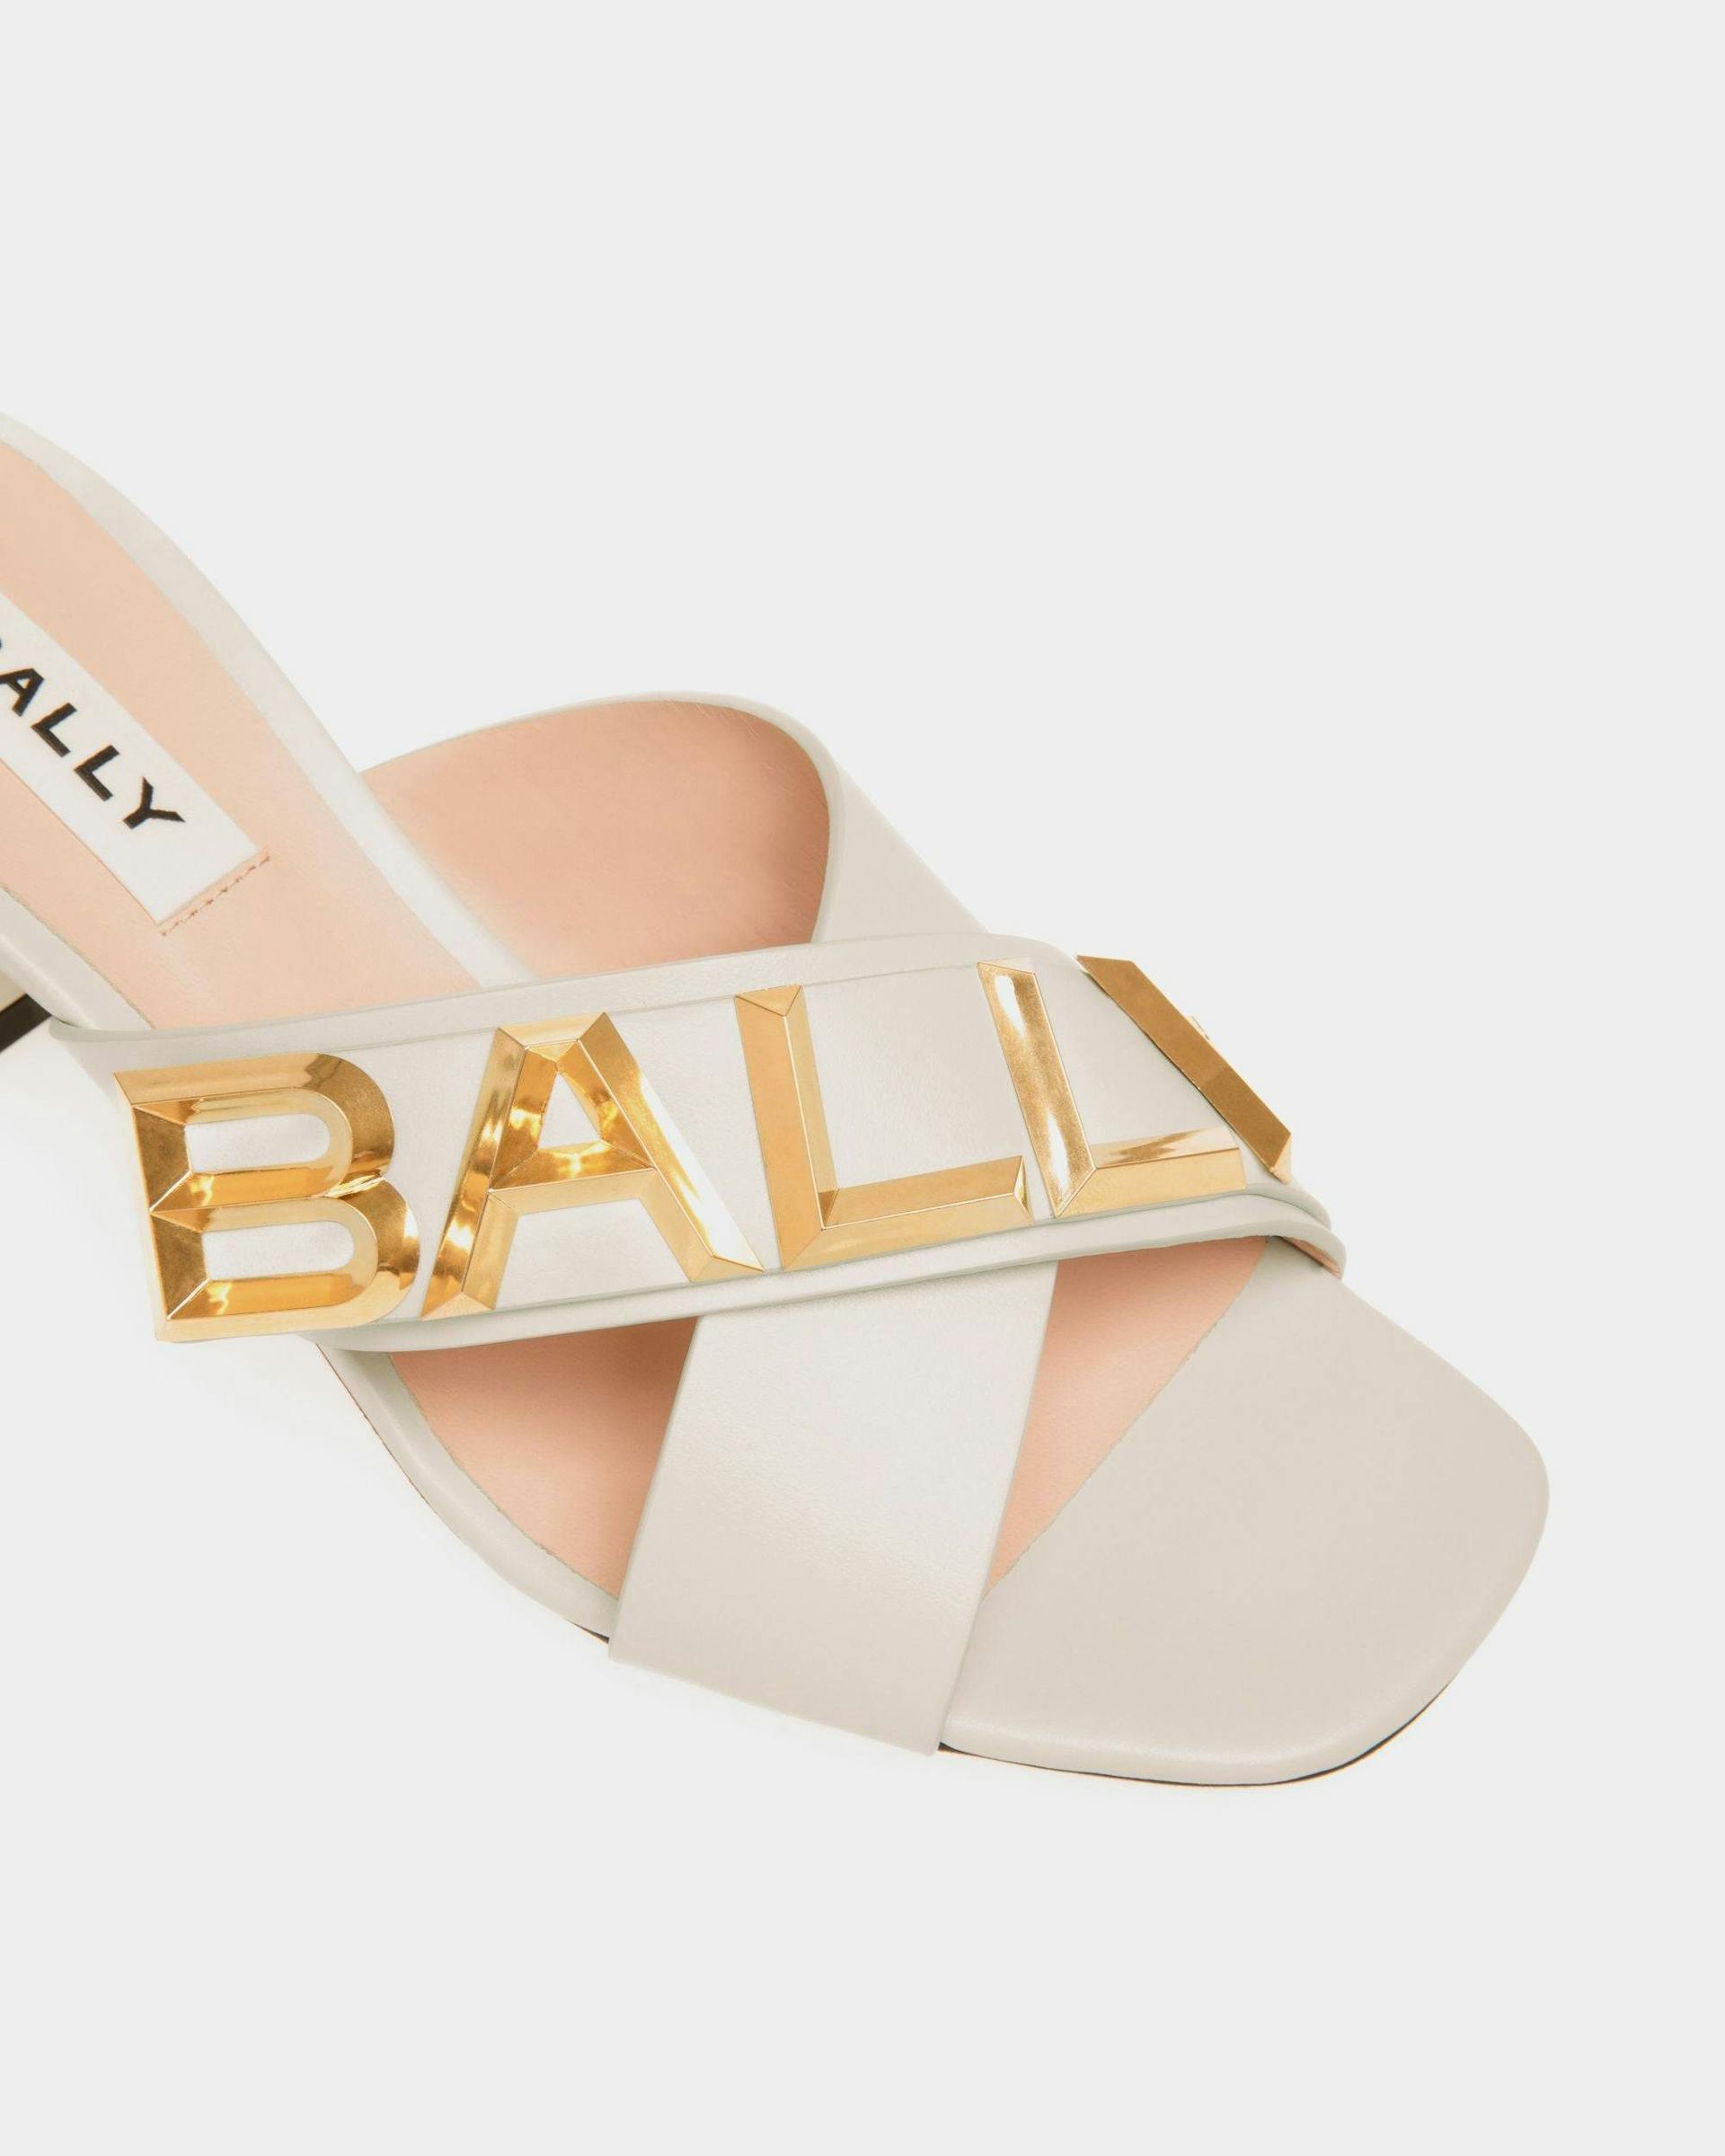 Women's Bally Spell Heeled Slide in Leather | Bally | Still Life Detail